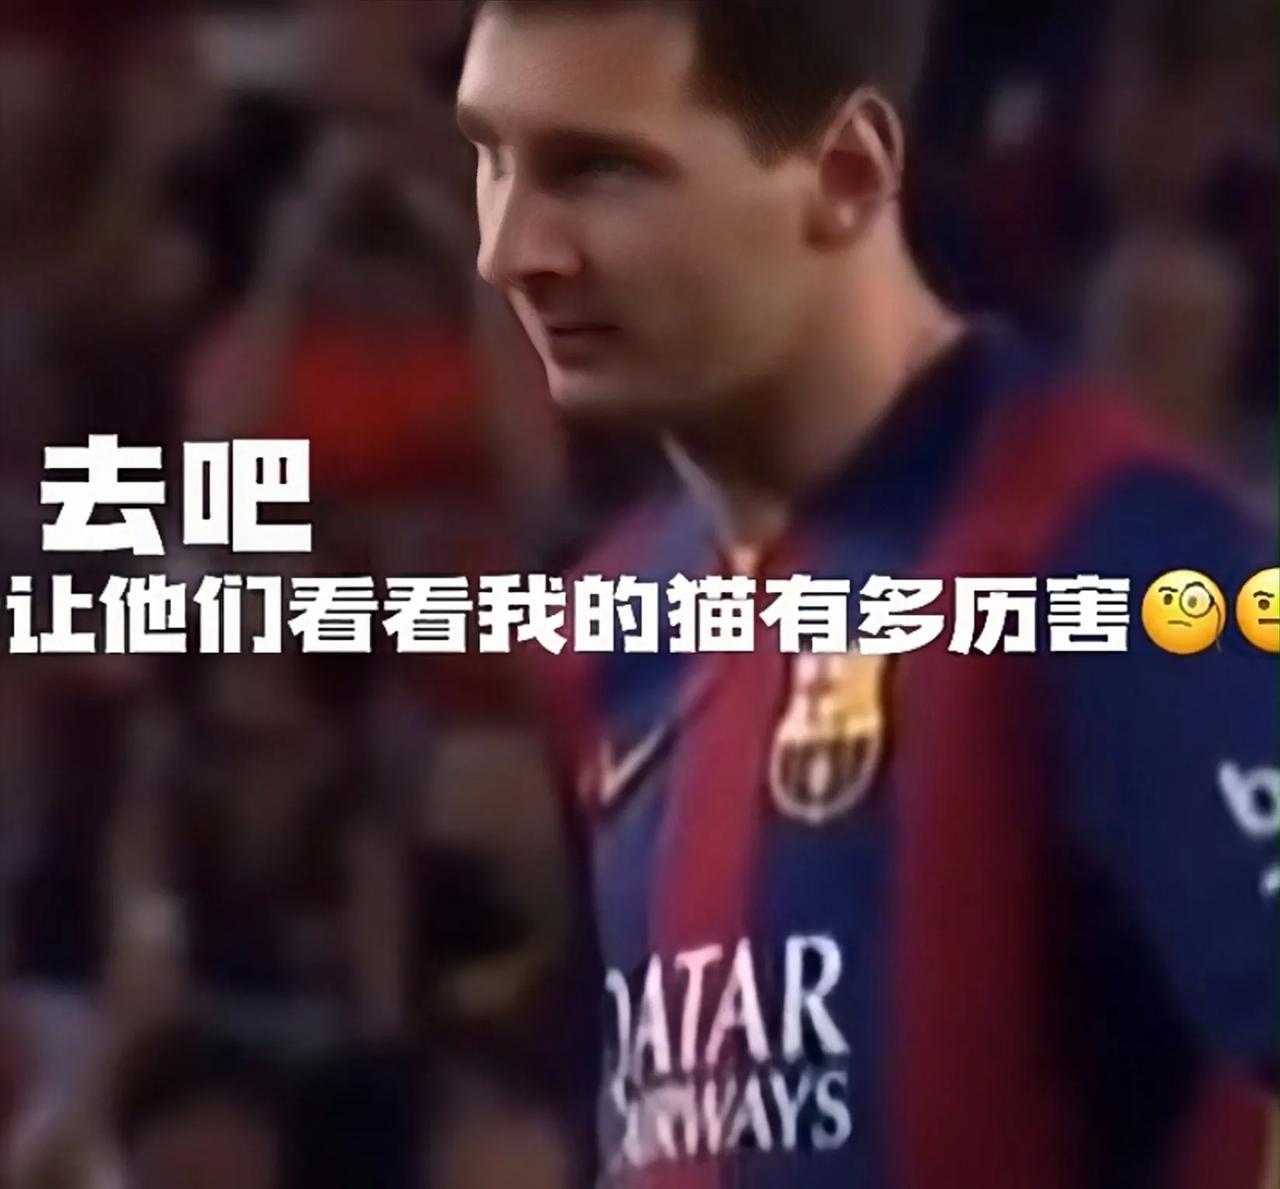 梅西猫：足坛的新宠儿，引发球迷们的疯狂争论！"

引言

大家好，我是中文自媒体(1)